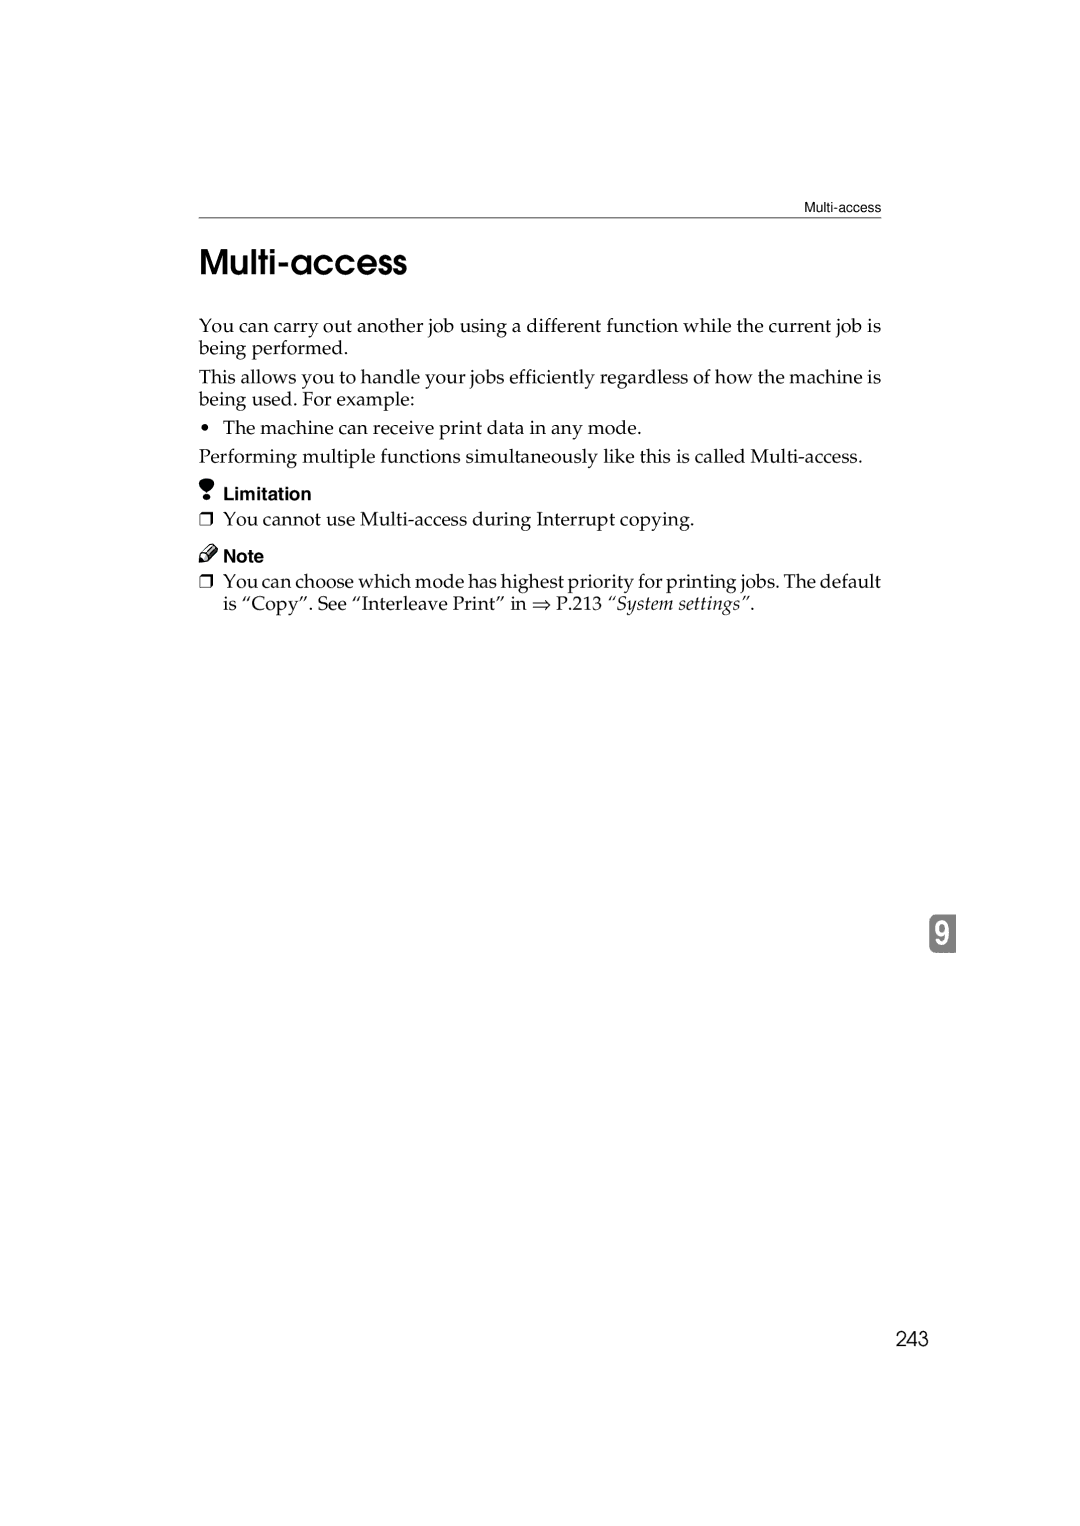 Ricoh 6513 manual Multi-access, 243 